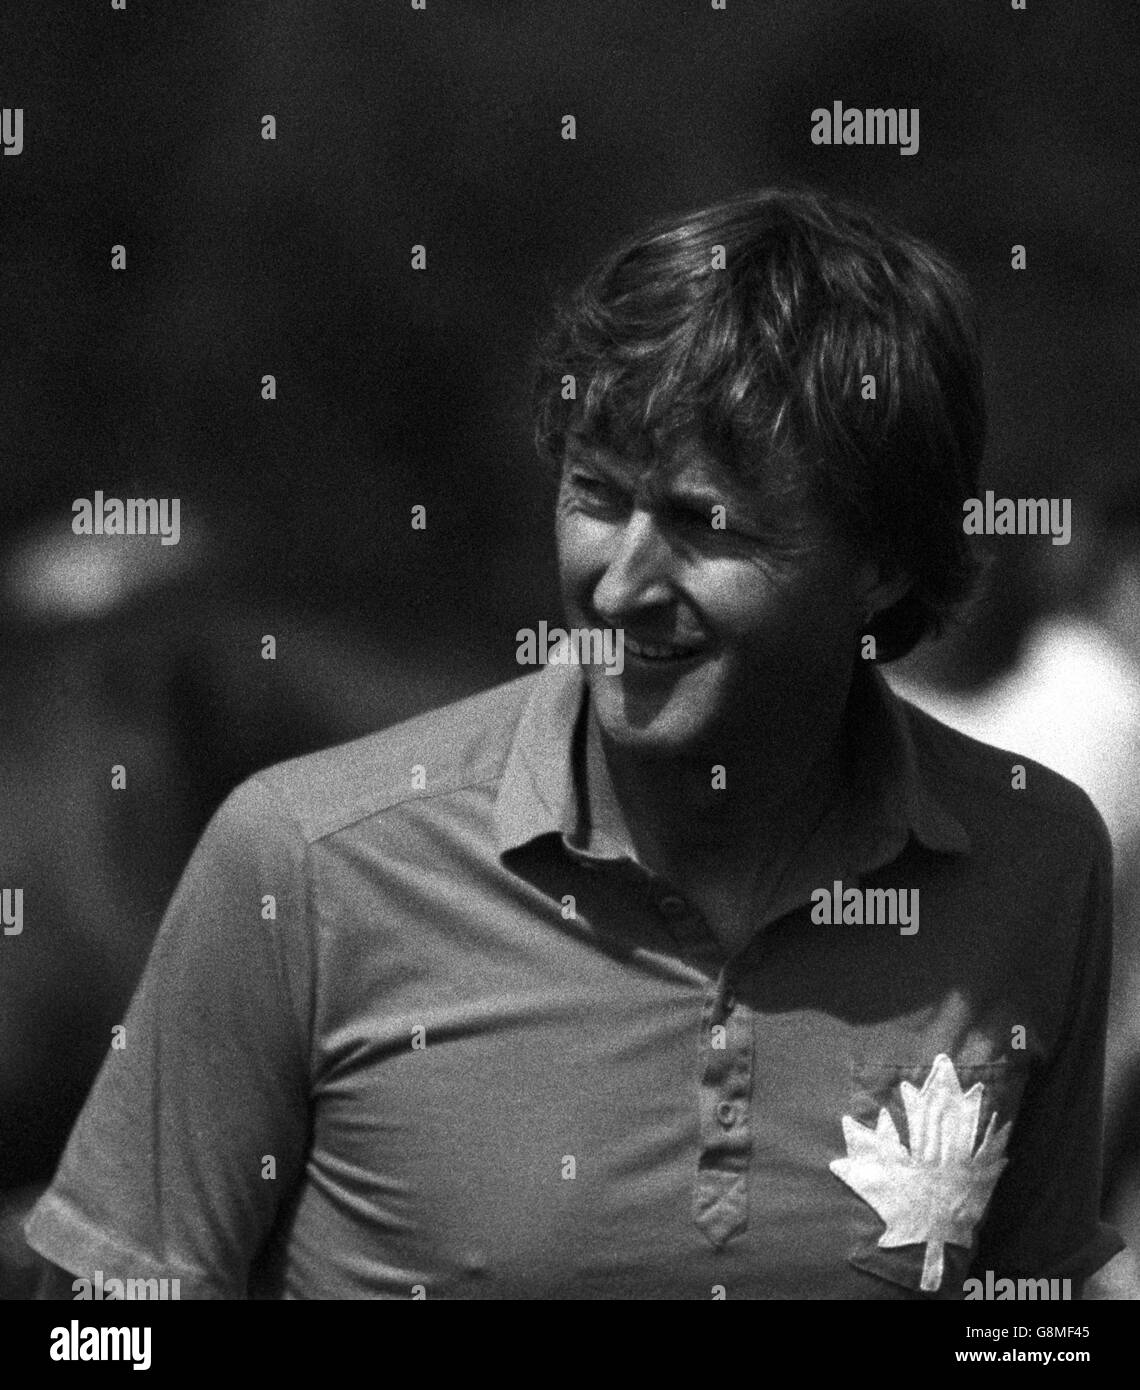 Herr Galen Weston. Kanadischer Millionär Herr Galen Weston spielt Polo in Windsor heute spielte der Supermarktmagnate für das Maple Leafs-Team. 206418-2a Stockfoto